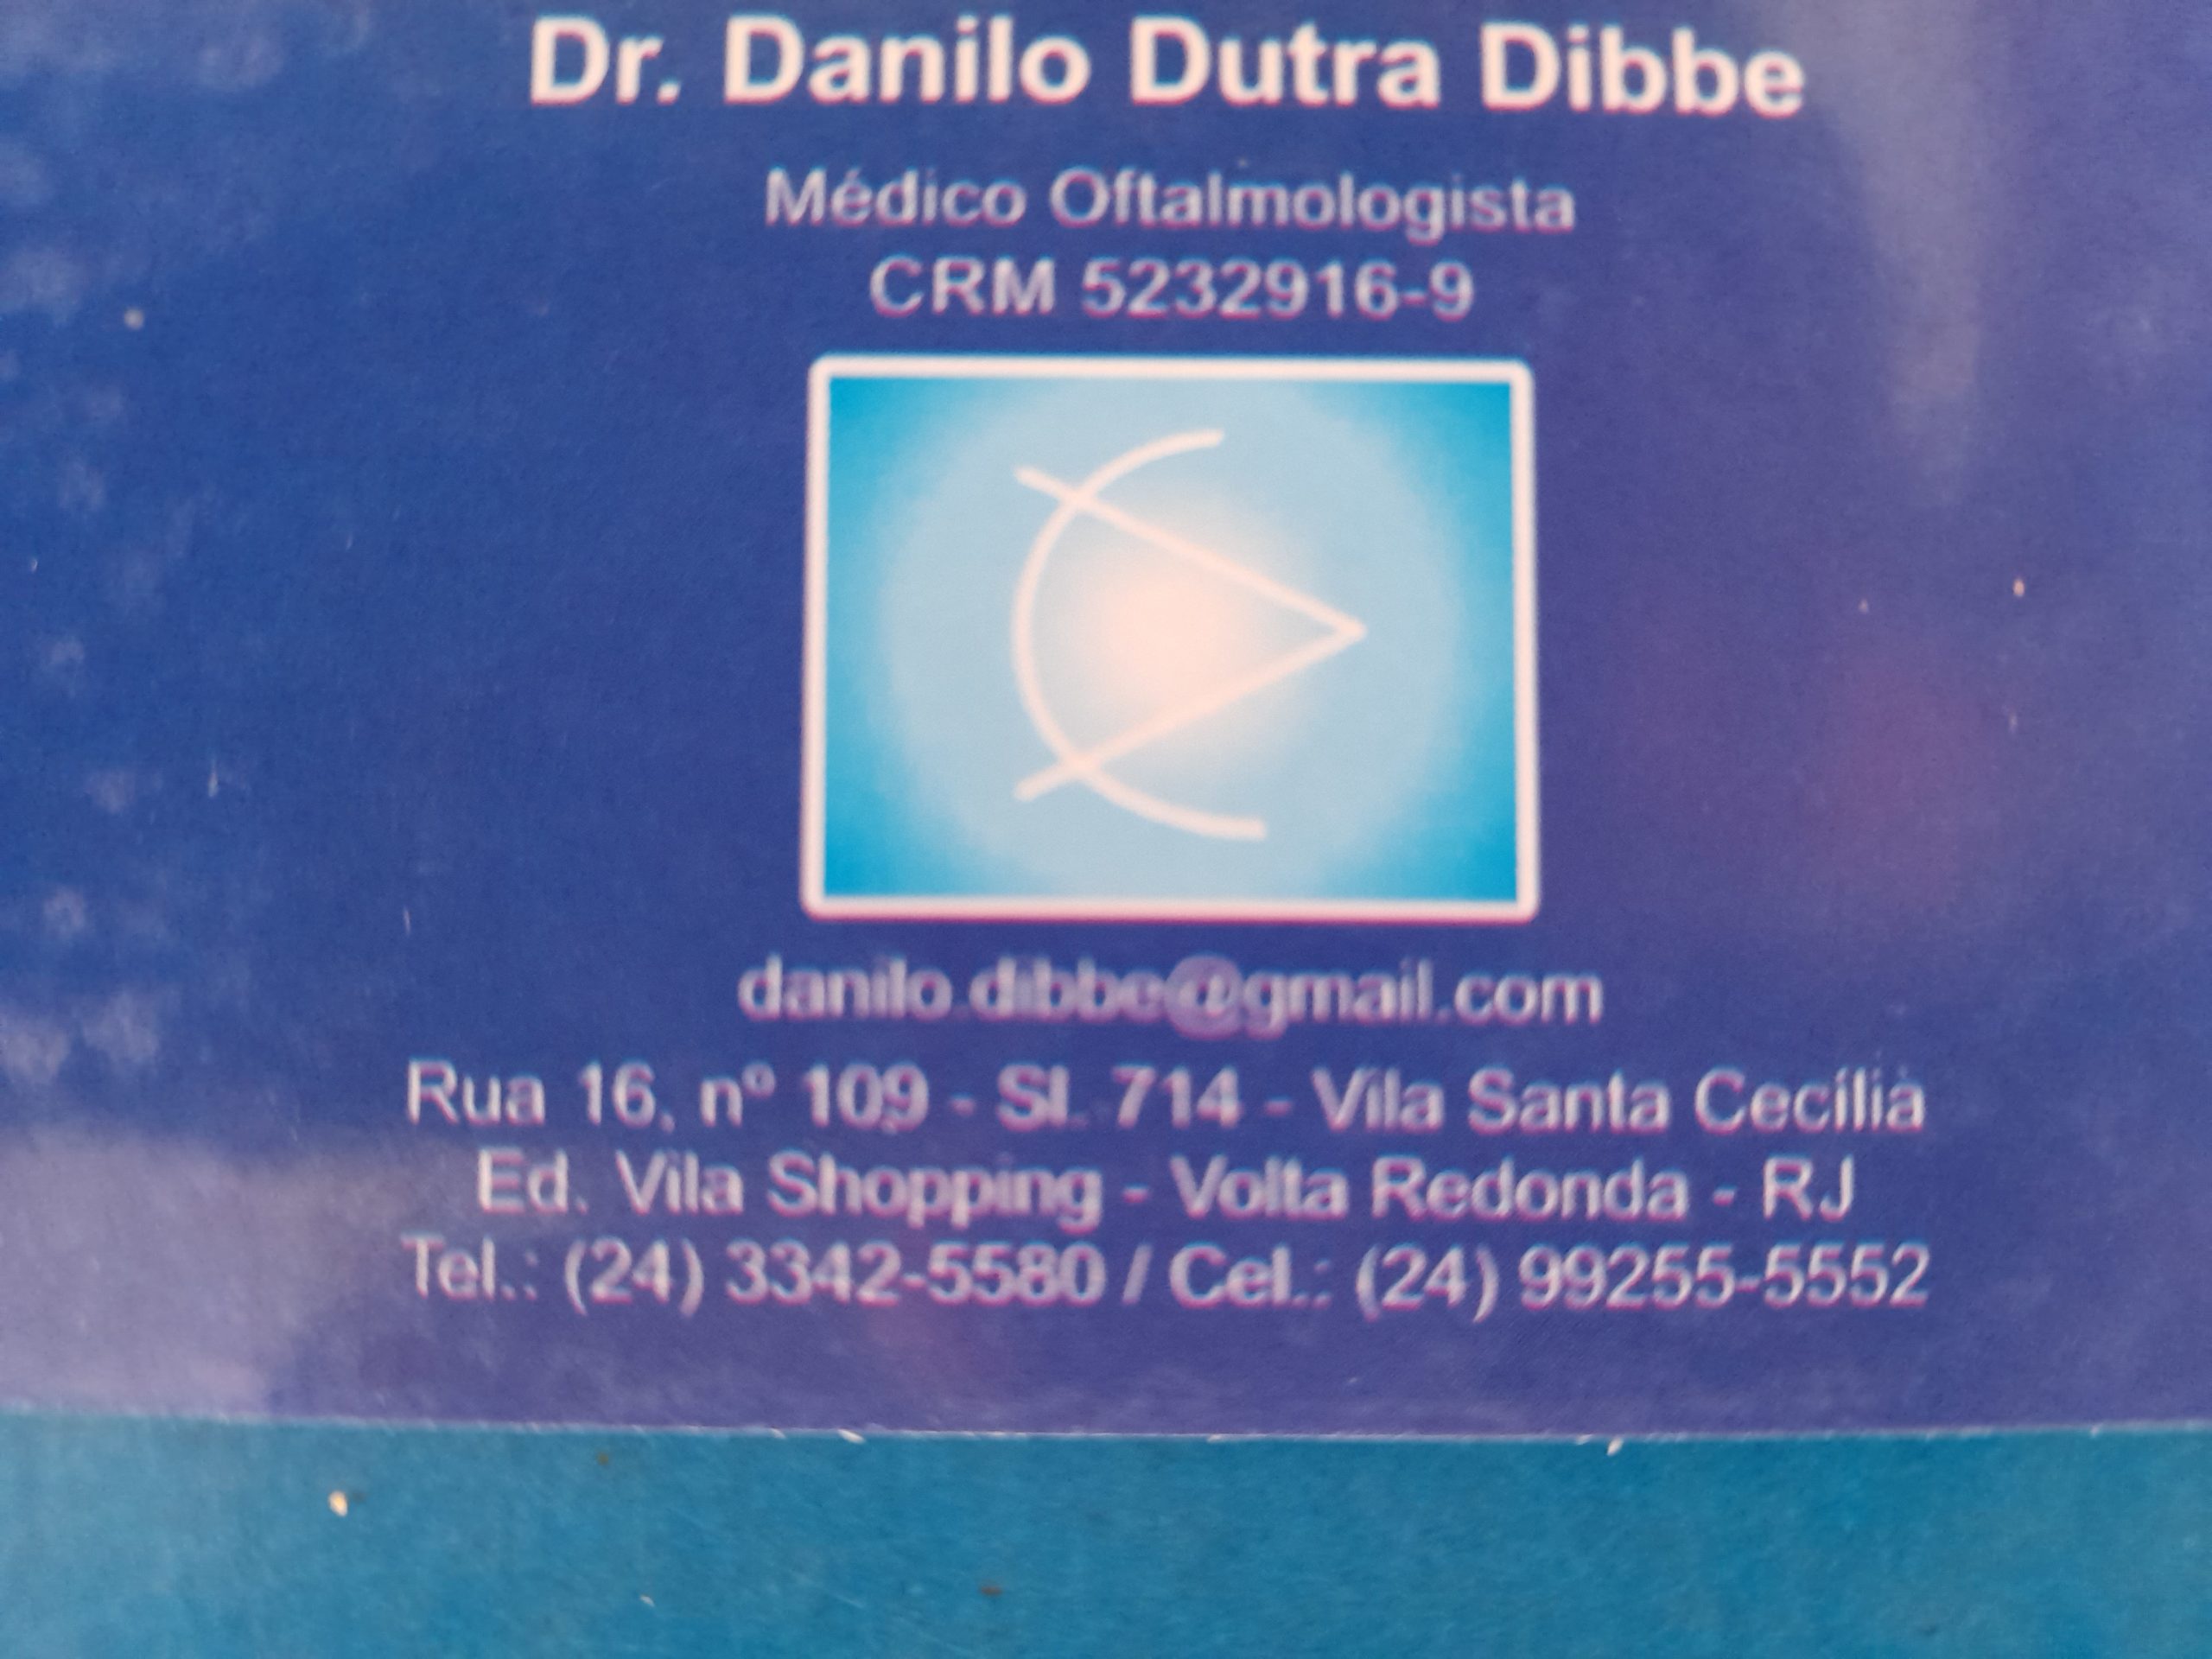 Dr. Danilo Dutra Dibbe